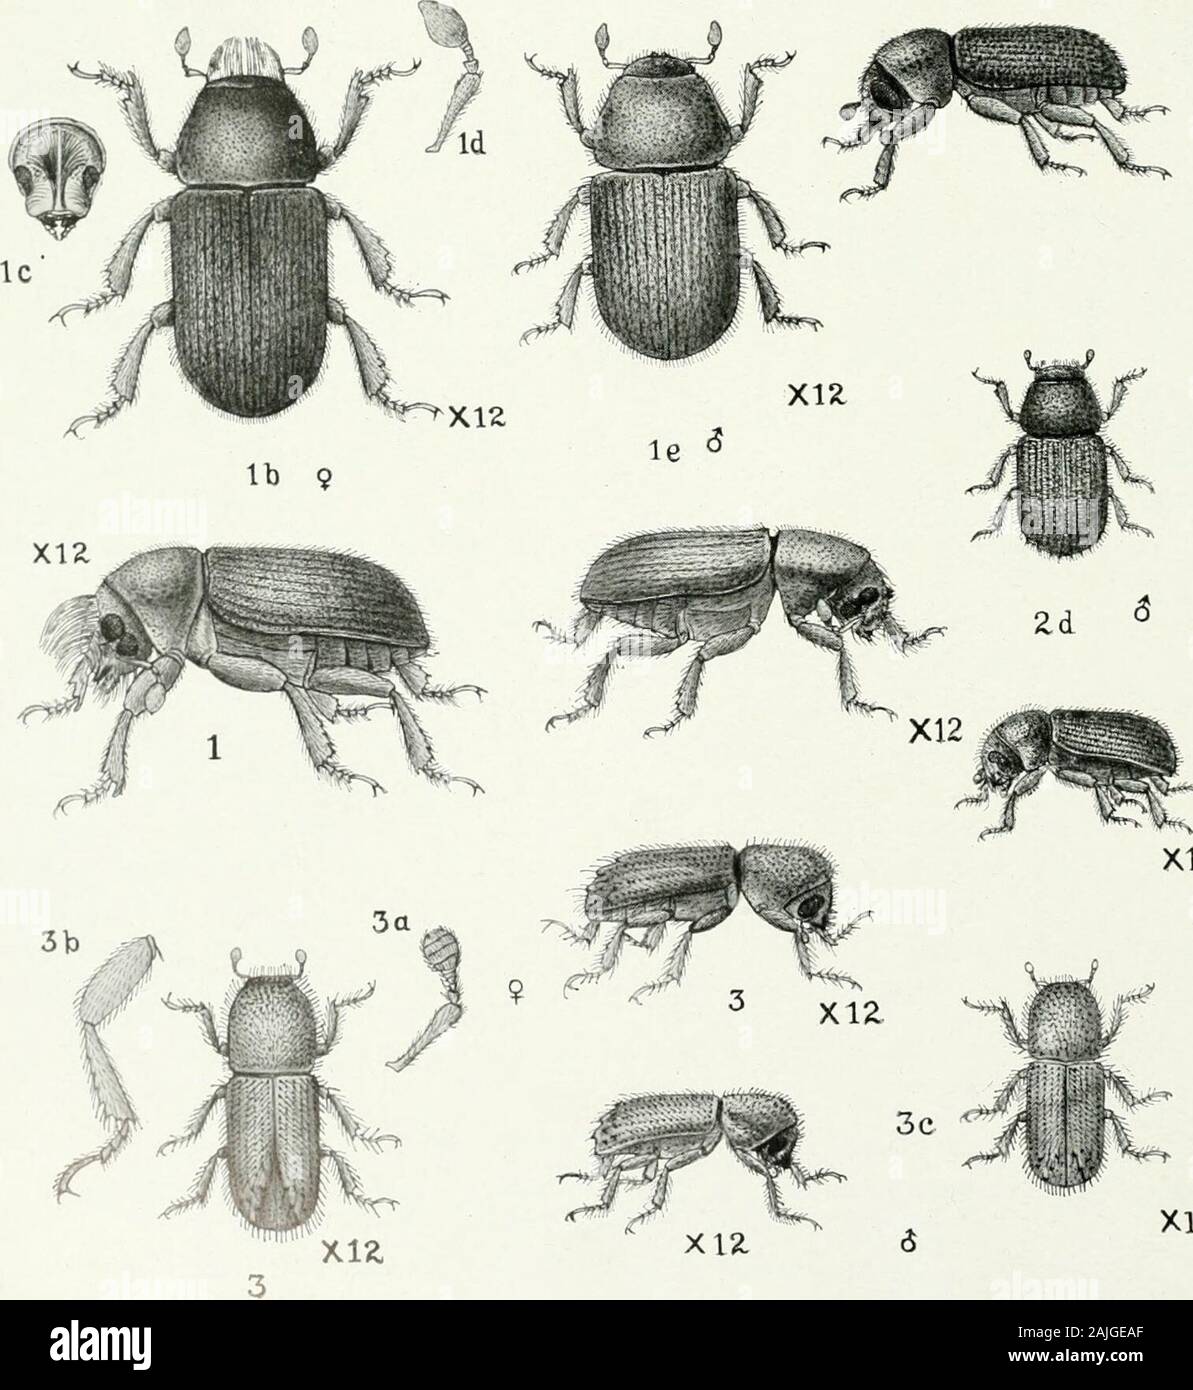 Indian Forest Insekten Coleoptera von wirtschaftlicher Bedeutung. "• Xtt. xia X12 trenchi, Schritt, der die Finnen gerardiana in Zhob.-I, Larve; ein, Puppe; setle; ic, Vorderseite der Leiter; id, vergrößerte Antenne; n; männliche Käfer. 2. Pension Phloeosinus gerardiana. - 2, Ei; 2 a, weibliche Käfer; 2 t&gt;, Antenne; 2 c, Bein; id, mal 3. Pityogenes coniferae, Schritt, der die Finnen gerardiana in Zhob und Coniferae der Nord-West Himalaya. - 3, weibliche Käfer; 3 &Lt;z, Antenne; 3^, Bein; y, männliche Käfer. Familie SCOLYTIDAE 511 Käfer. - $ Länglich zylindrisch, schwarz, mäßig glänzend; zwei brillante, Prominente, rötlich-goldenen Stockfoto